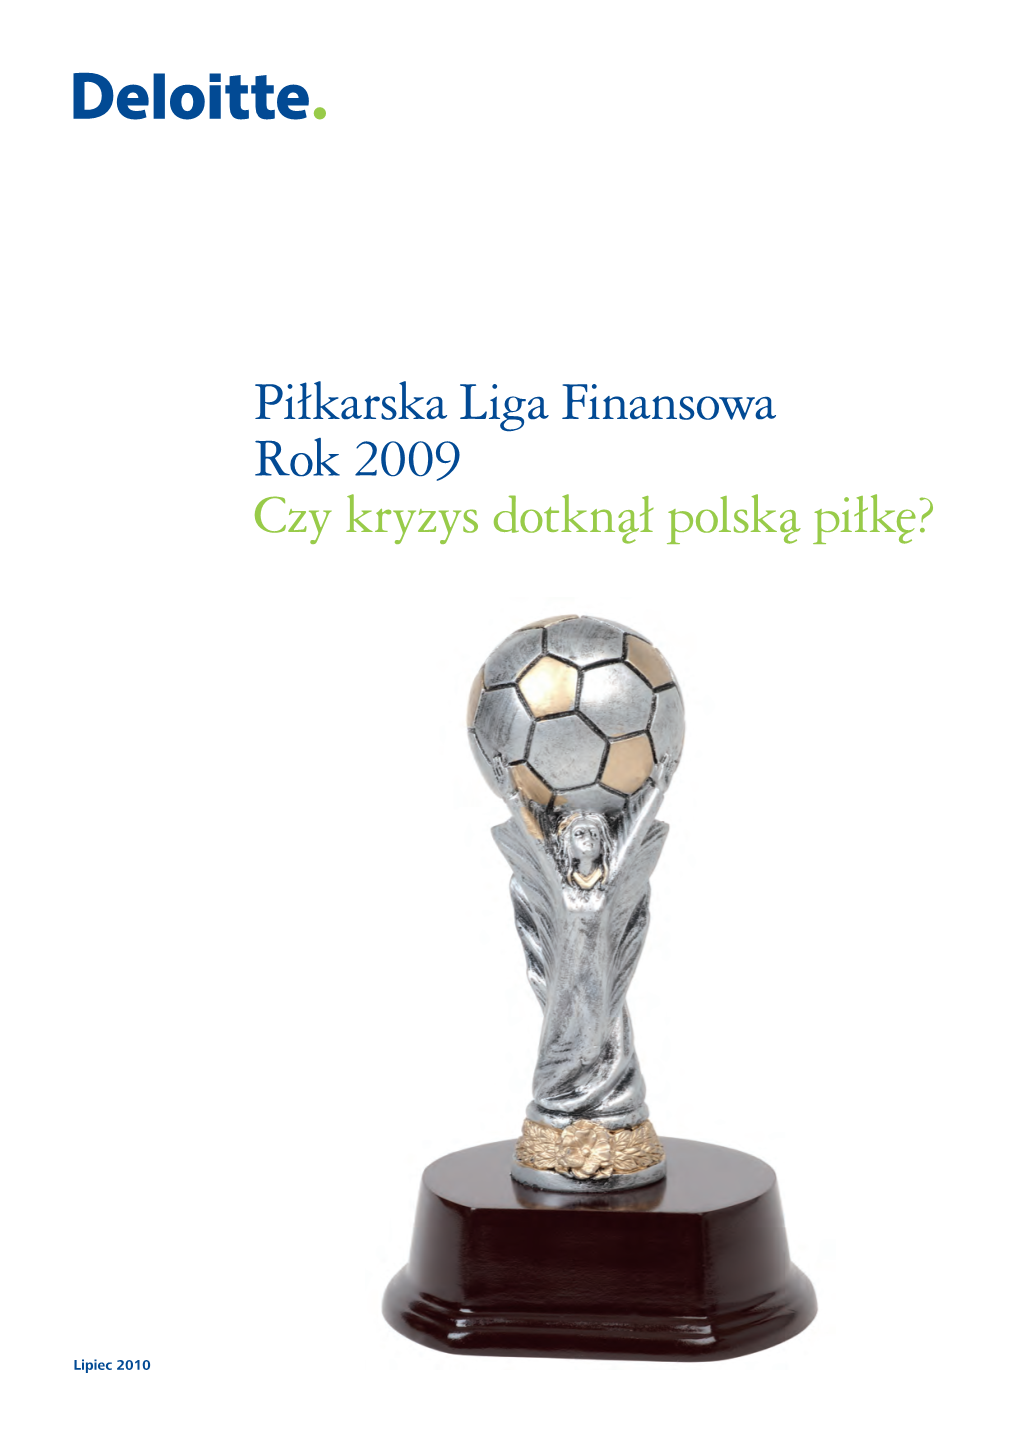 Piłkarska Liga Finansowa Rok 2009 Czy Kryzys Dotknął Polską Piłkę?